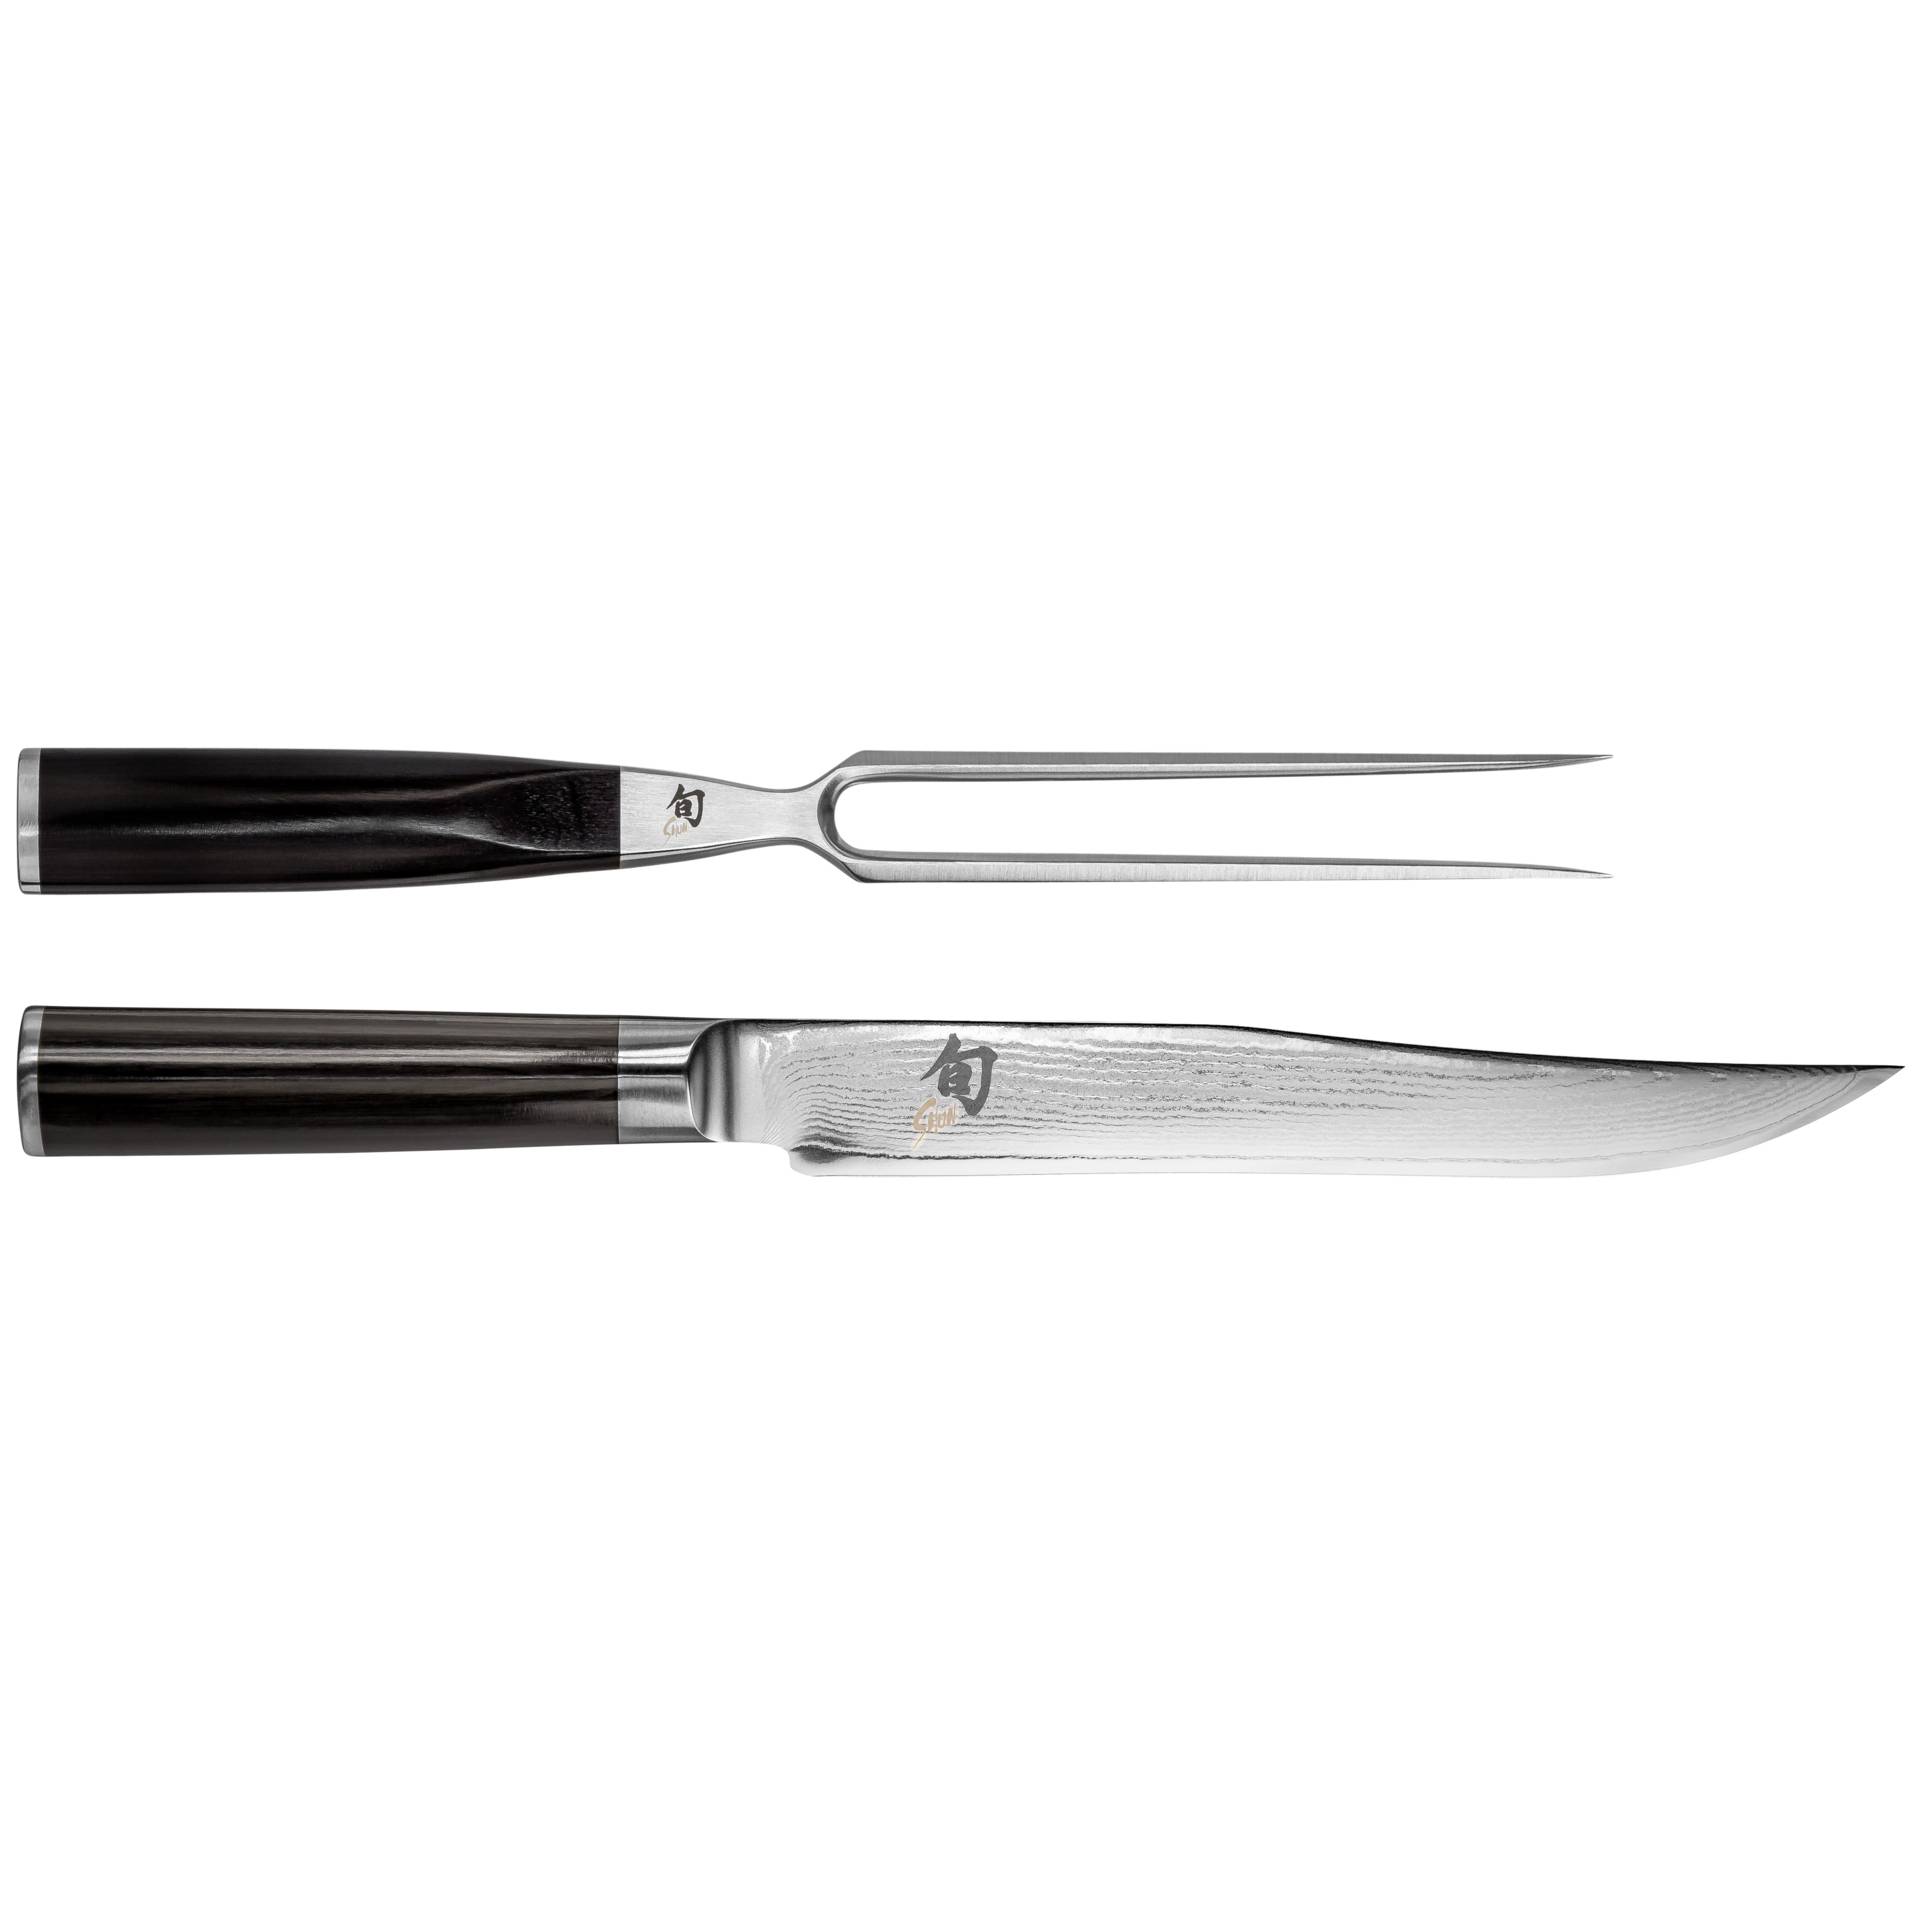 KAI Shun Classic kit coltello da cucina -Set DMS-200